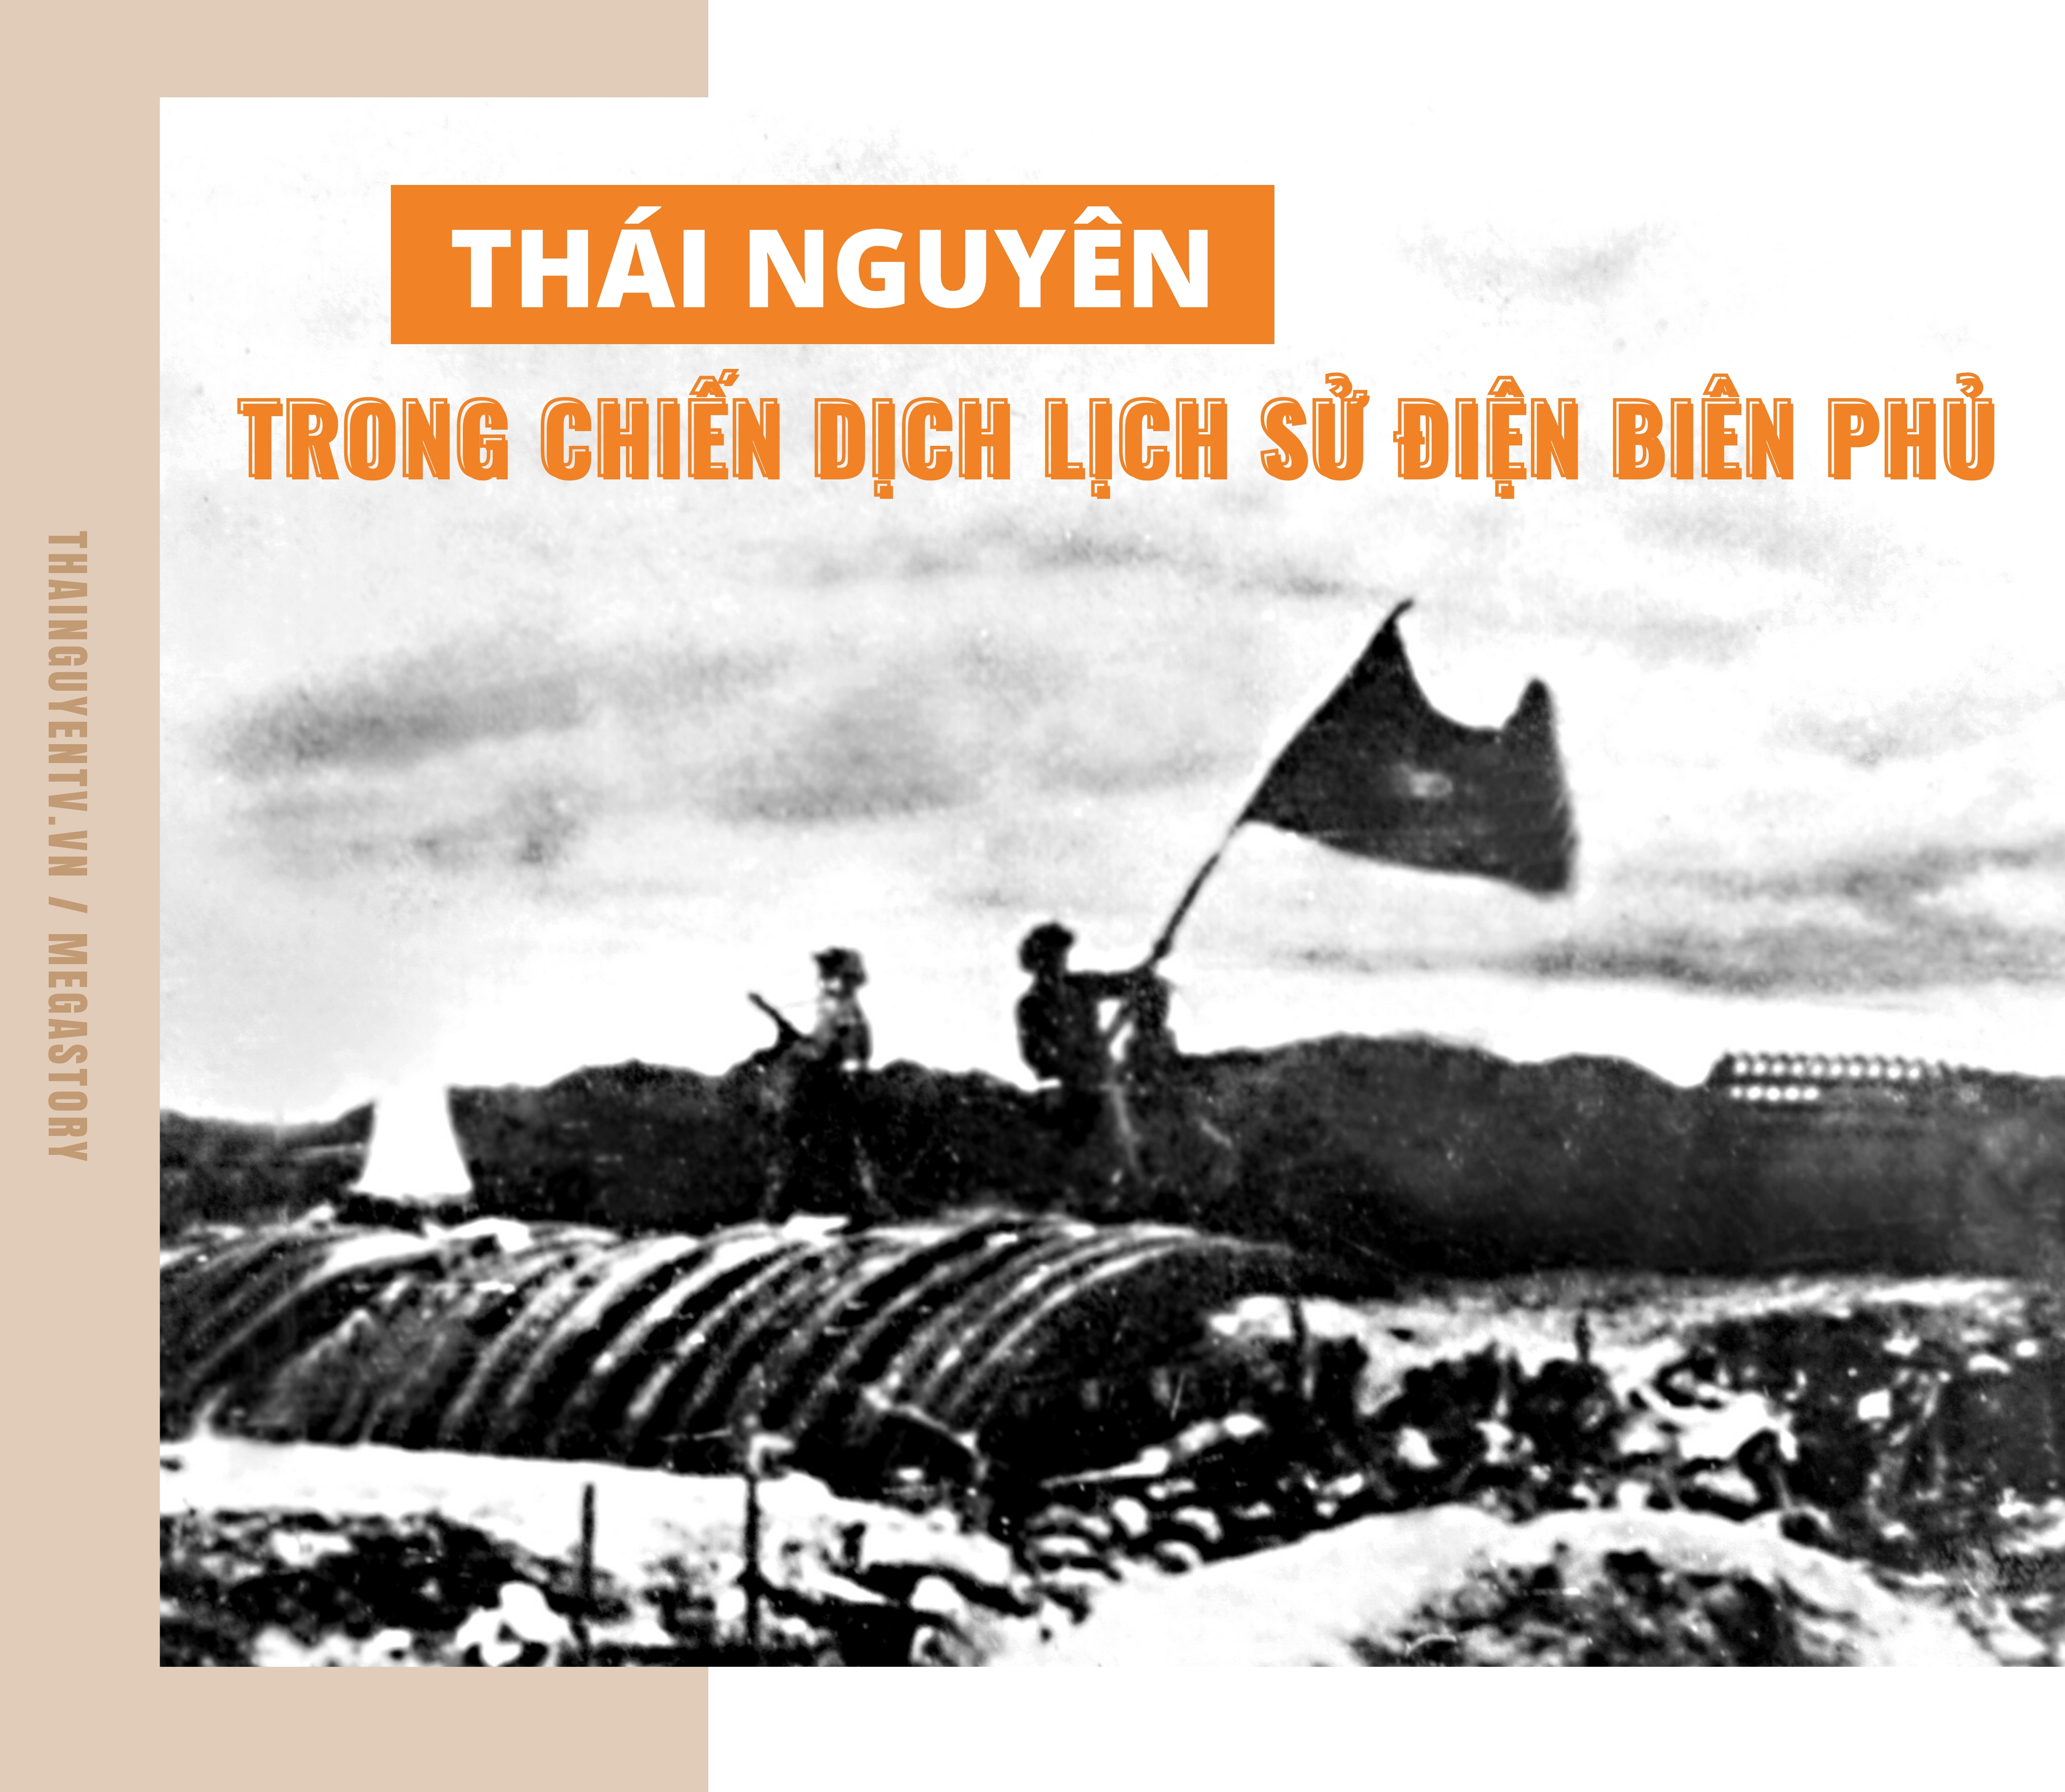 [Megastory] Thái Nguyên trong Chiến dịch lịch sử Điện Biên Phủ